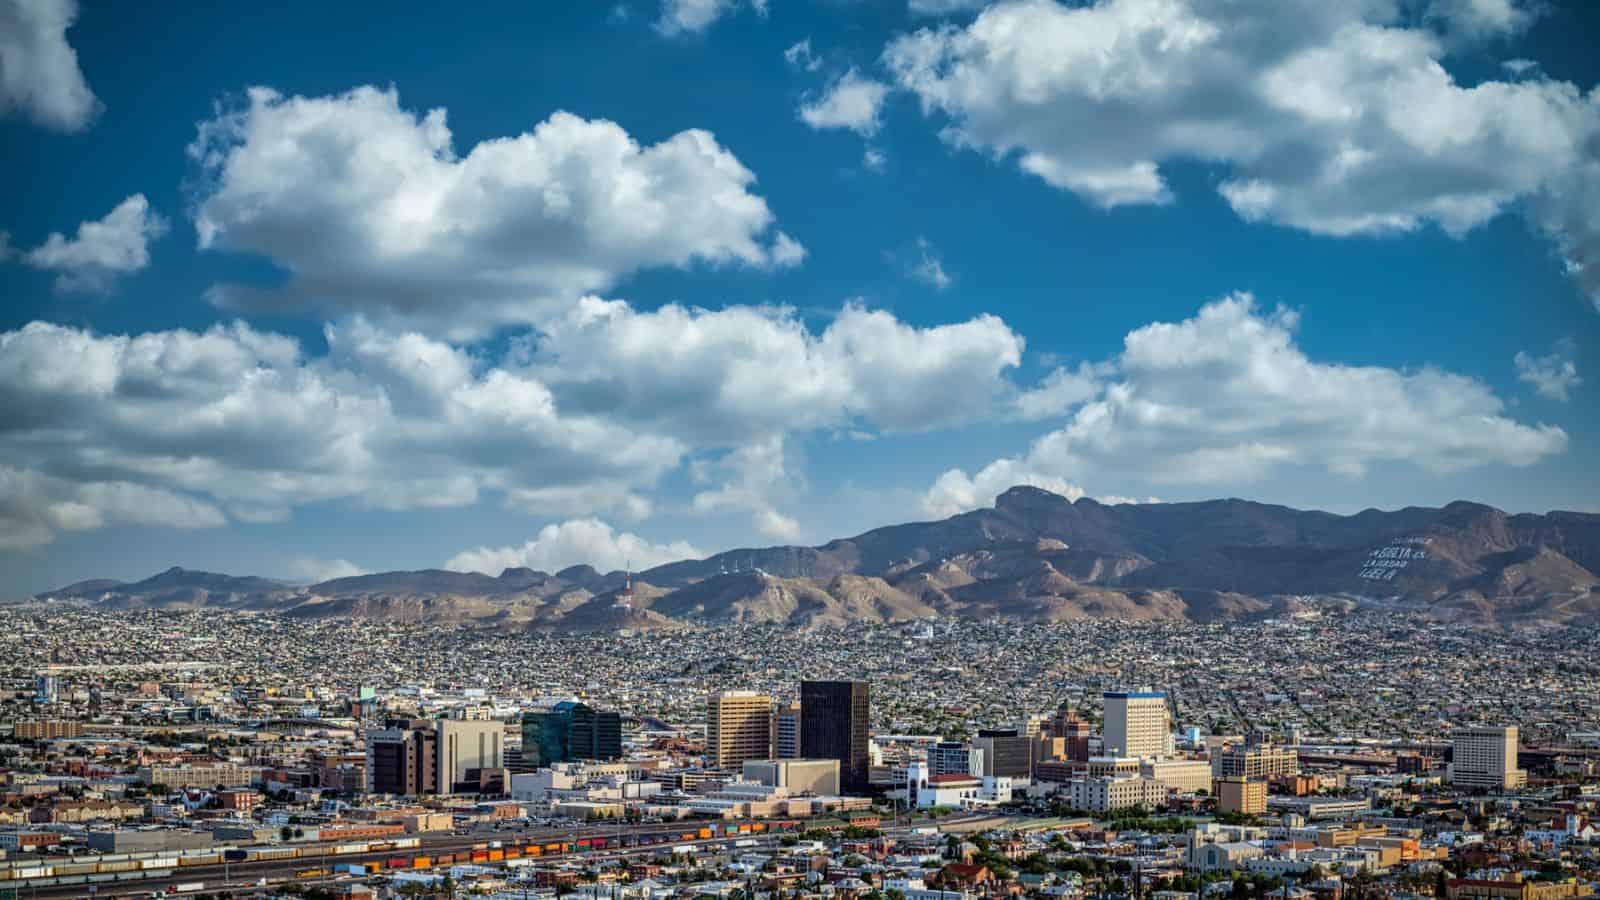 Juarez and El Paso